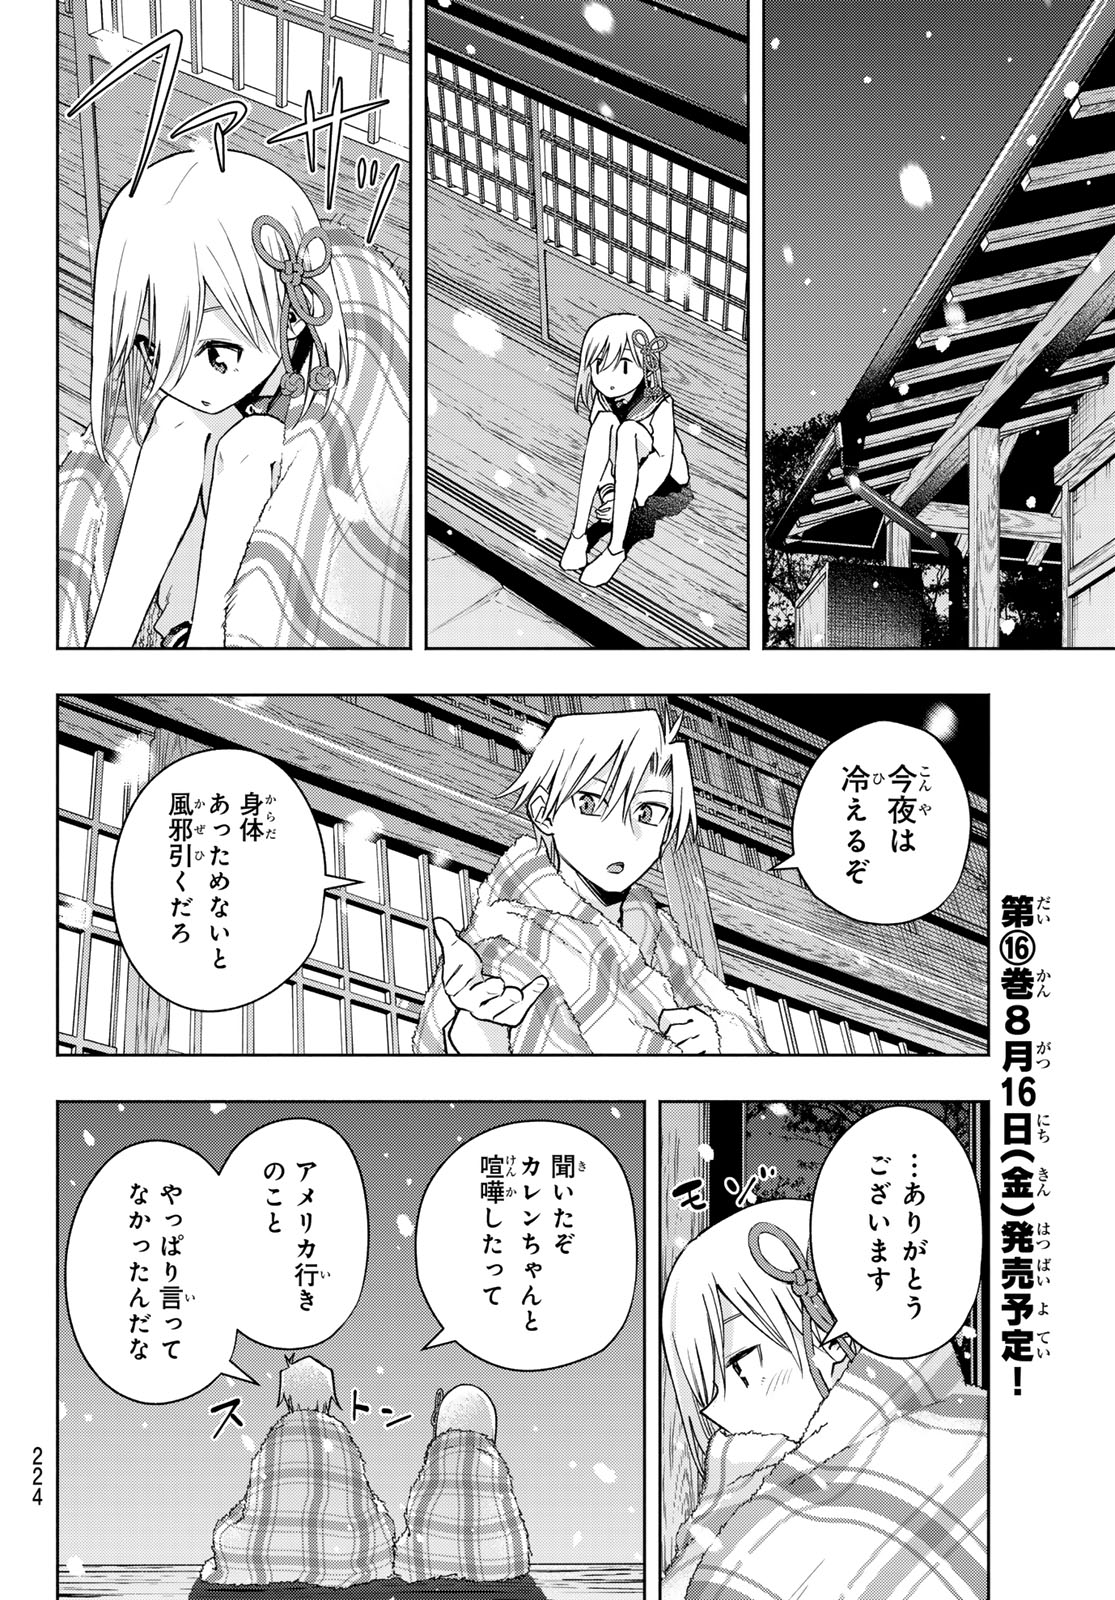 Amagami-san Chi no Enmusubi - Chapter 143 - Page 14